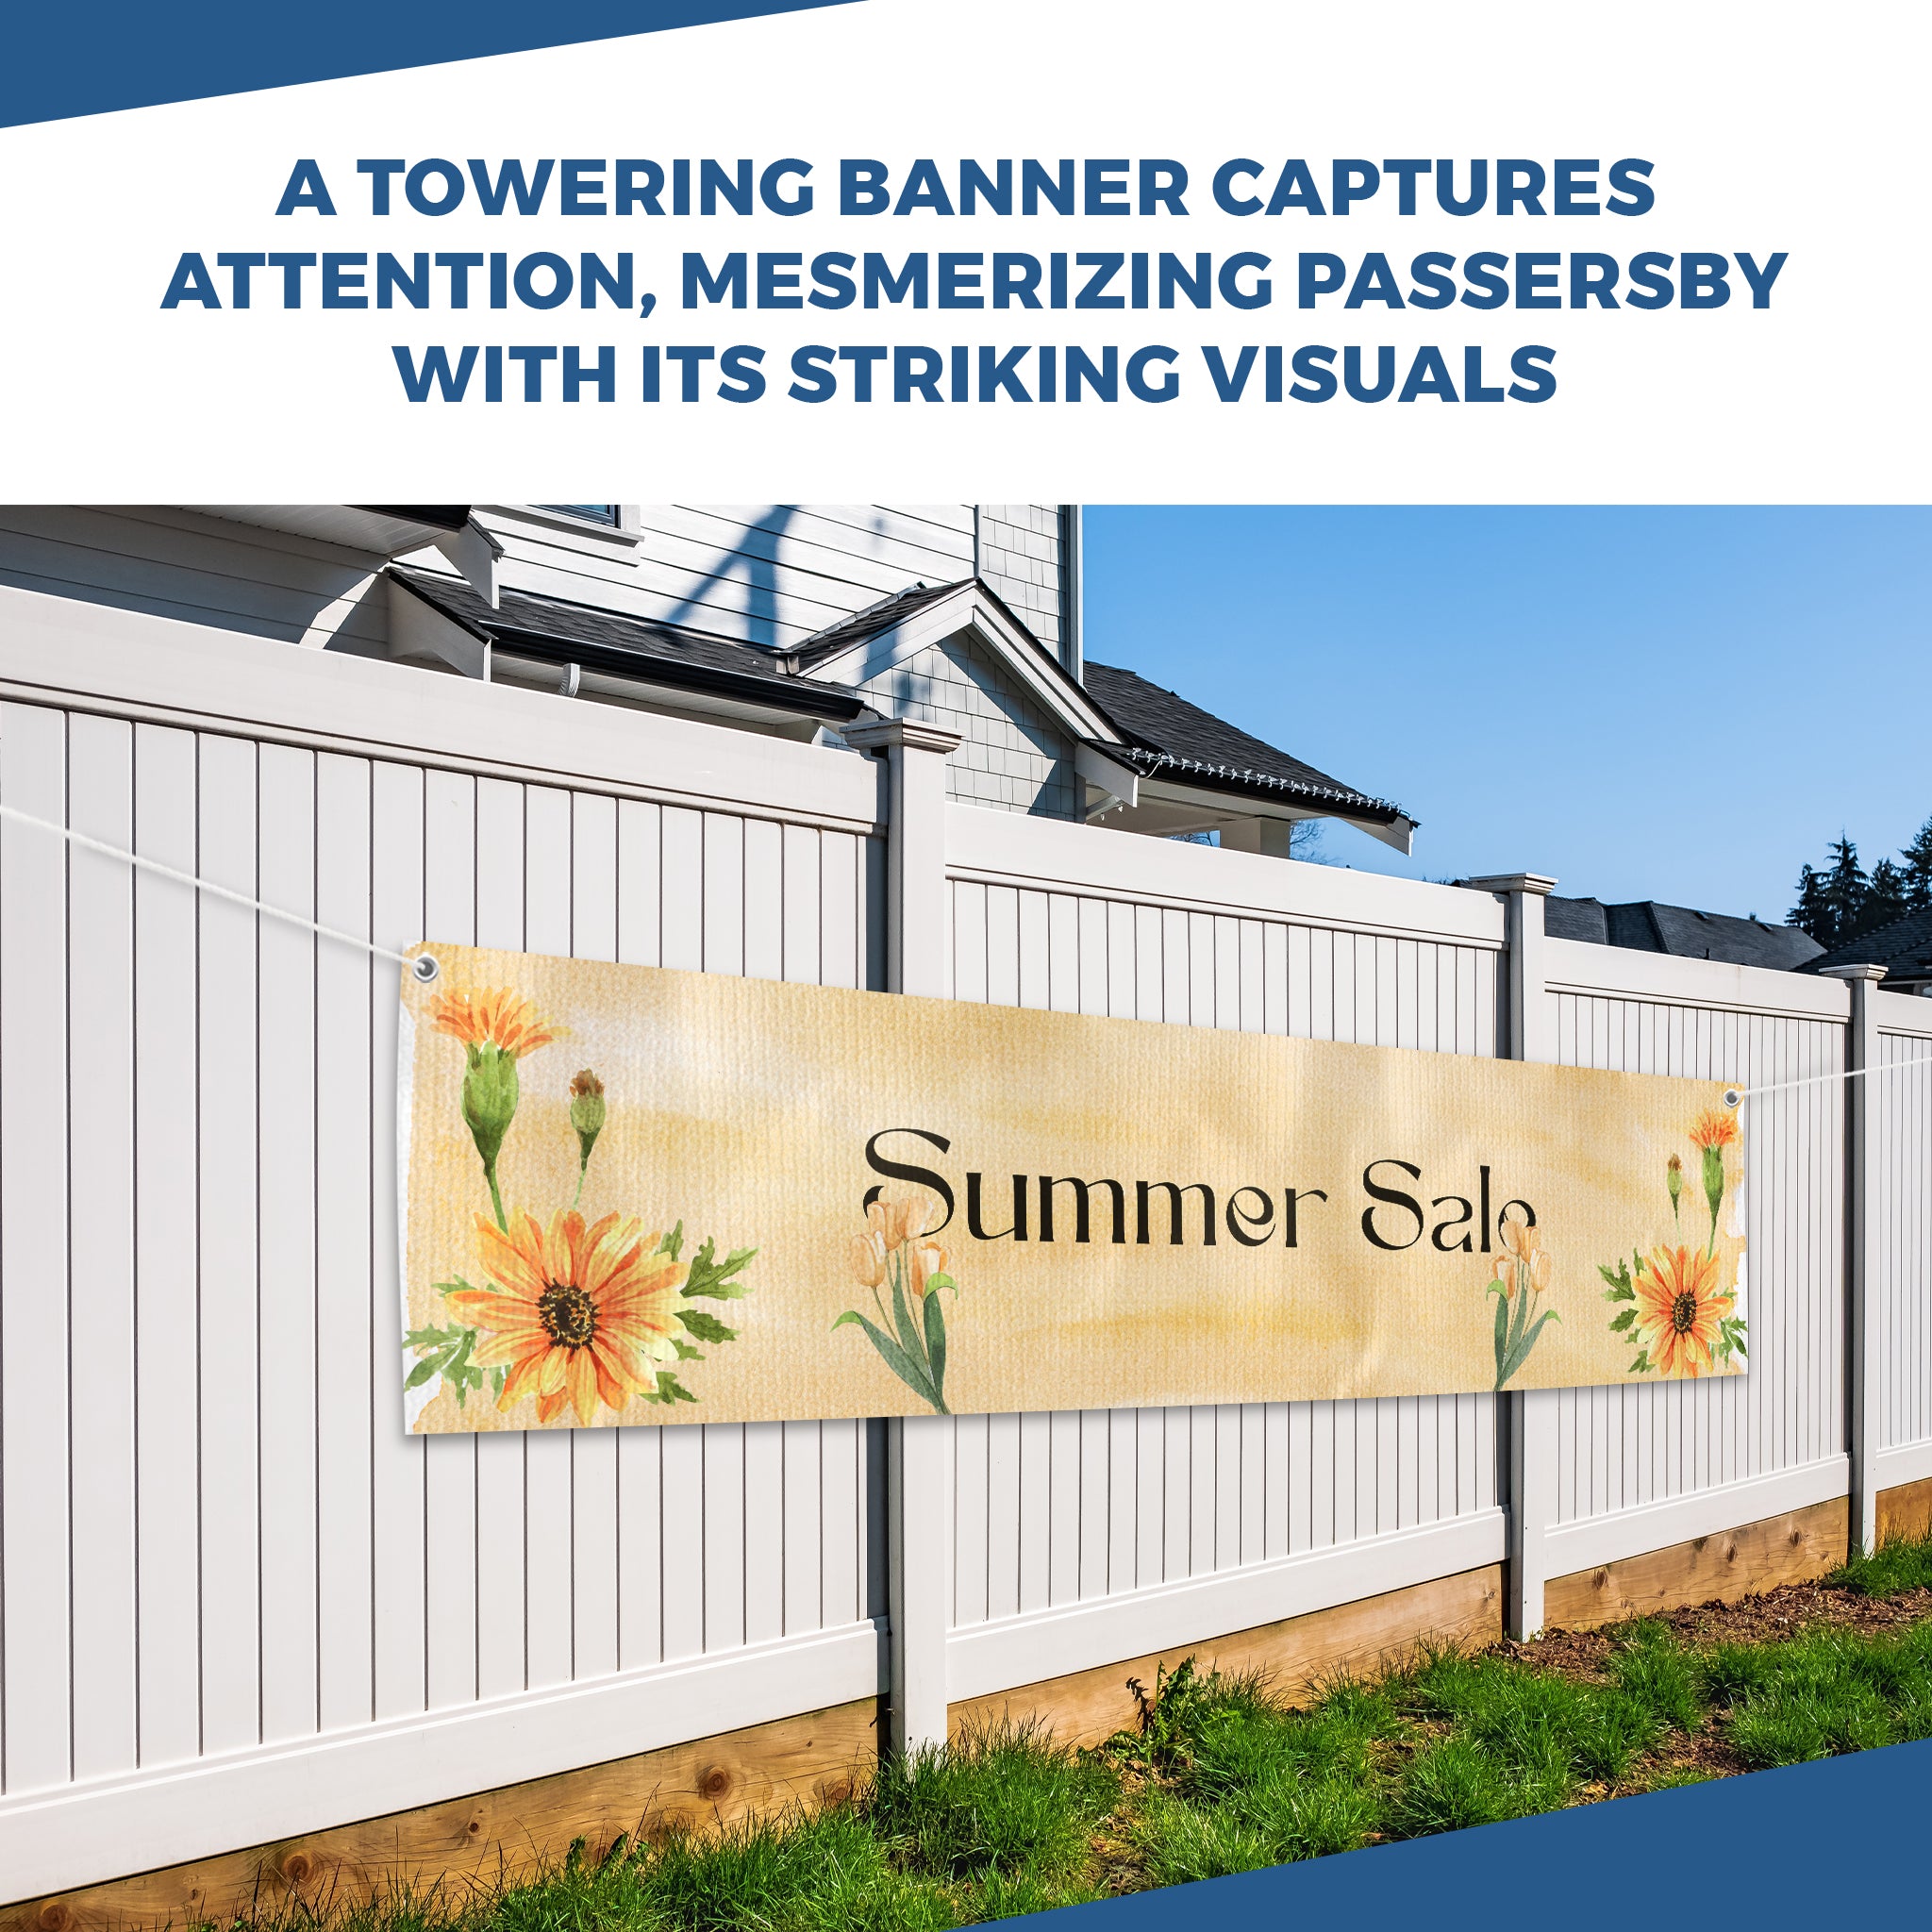 Summer Sale Large Banner